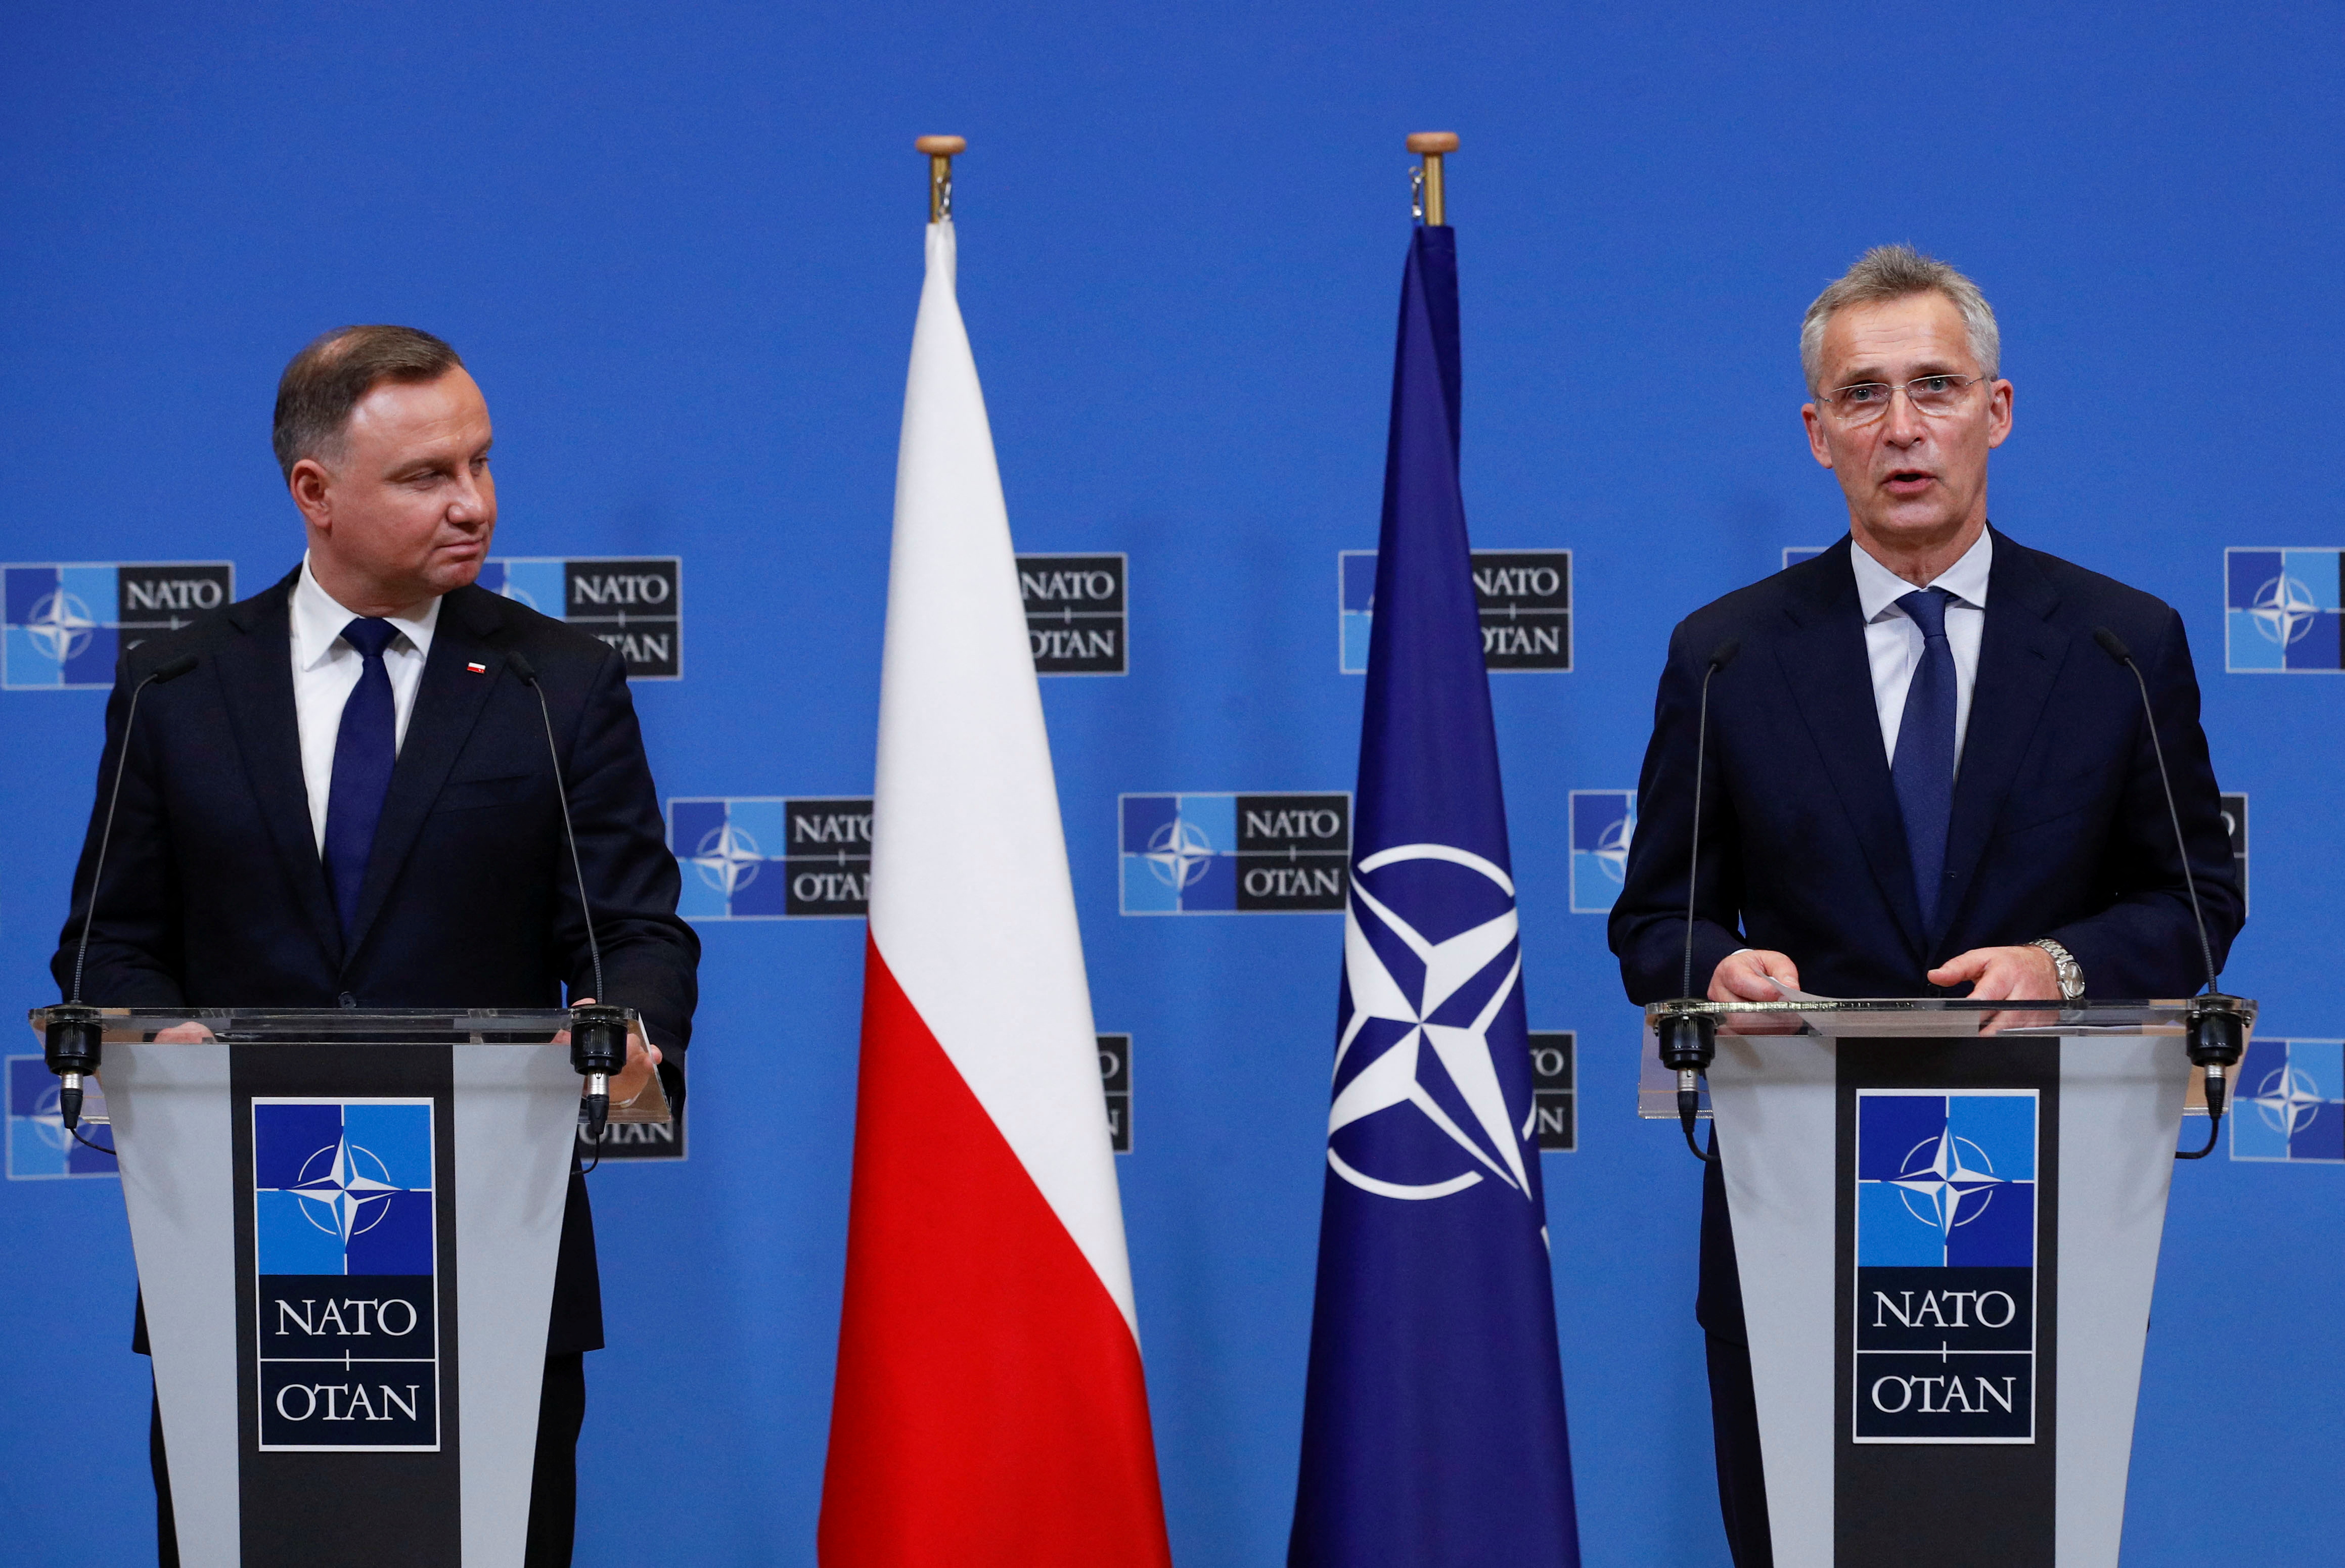 El presidente de Polonia, Andrzej Duda, mantuvo una conversación con Jens Stoltenberg, secretario general de la OTAN, tras el impacto de misiles rusos en suelo polaco (REUTERS/Johanna Geron)